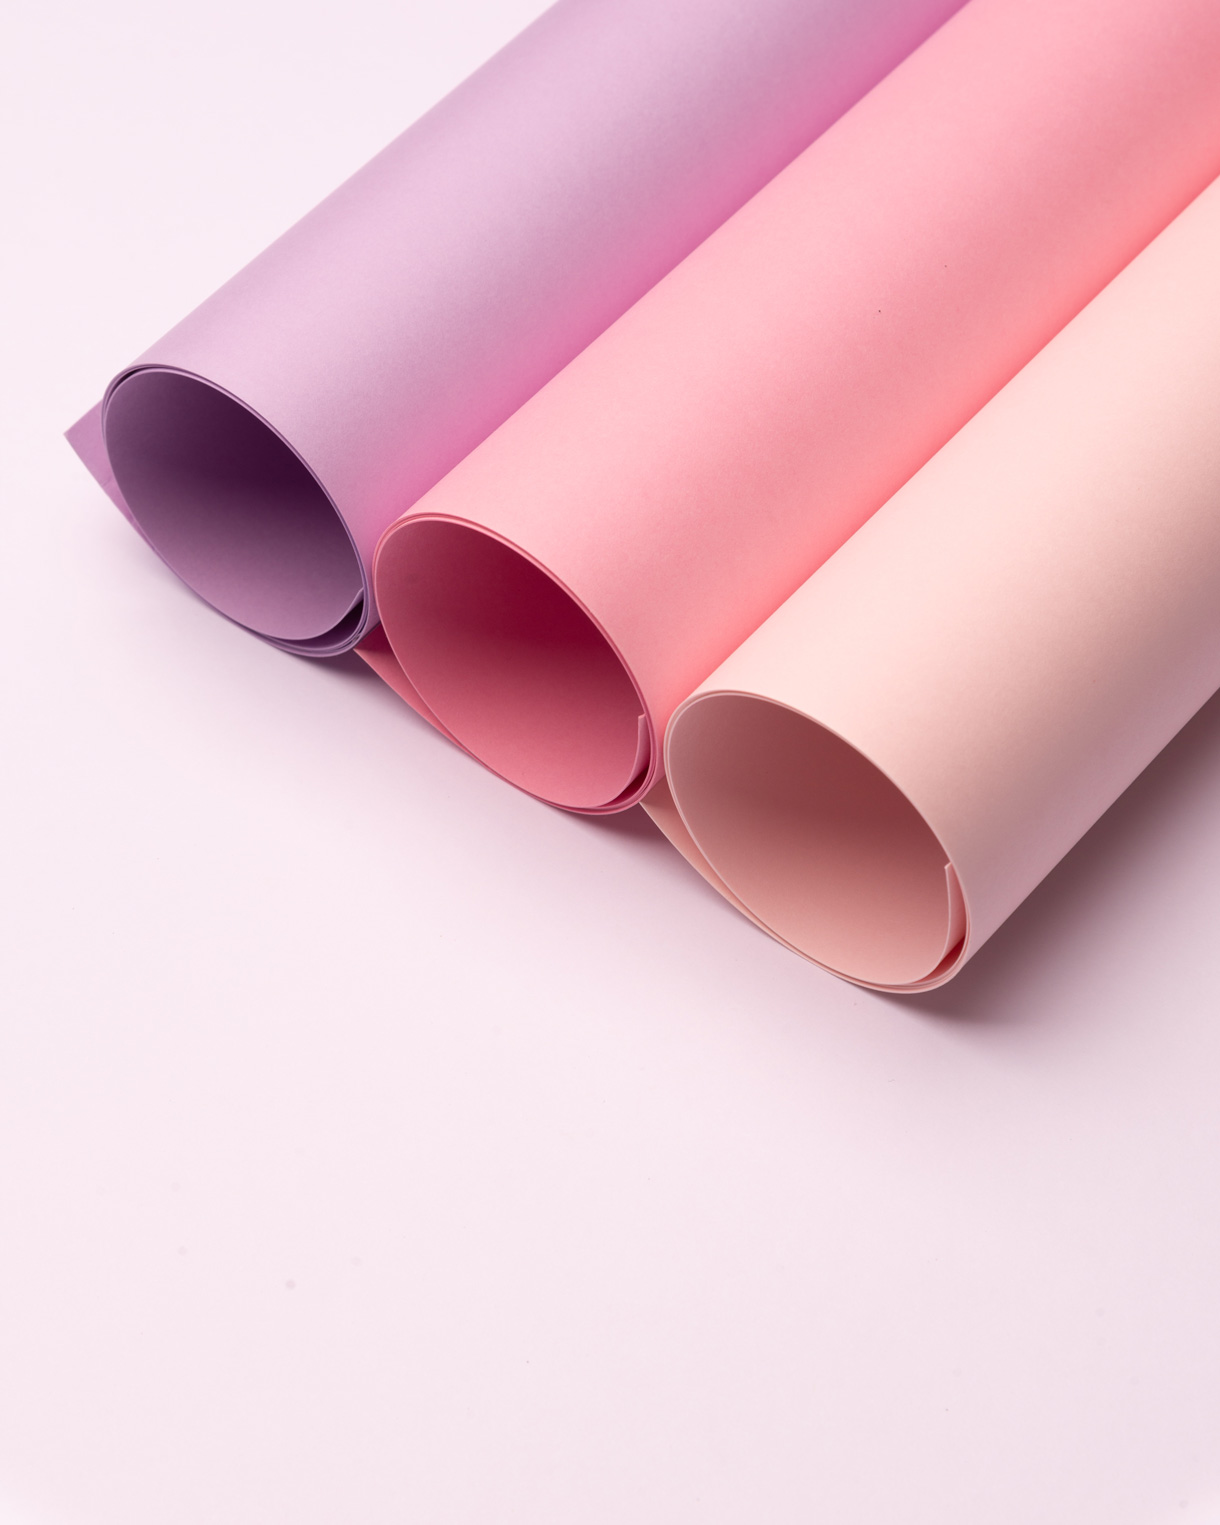 汕头市永隆纸品有限公司将亮相CIPPME上海国际包装展